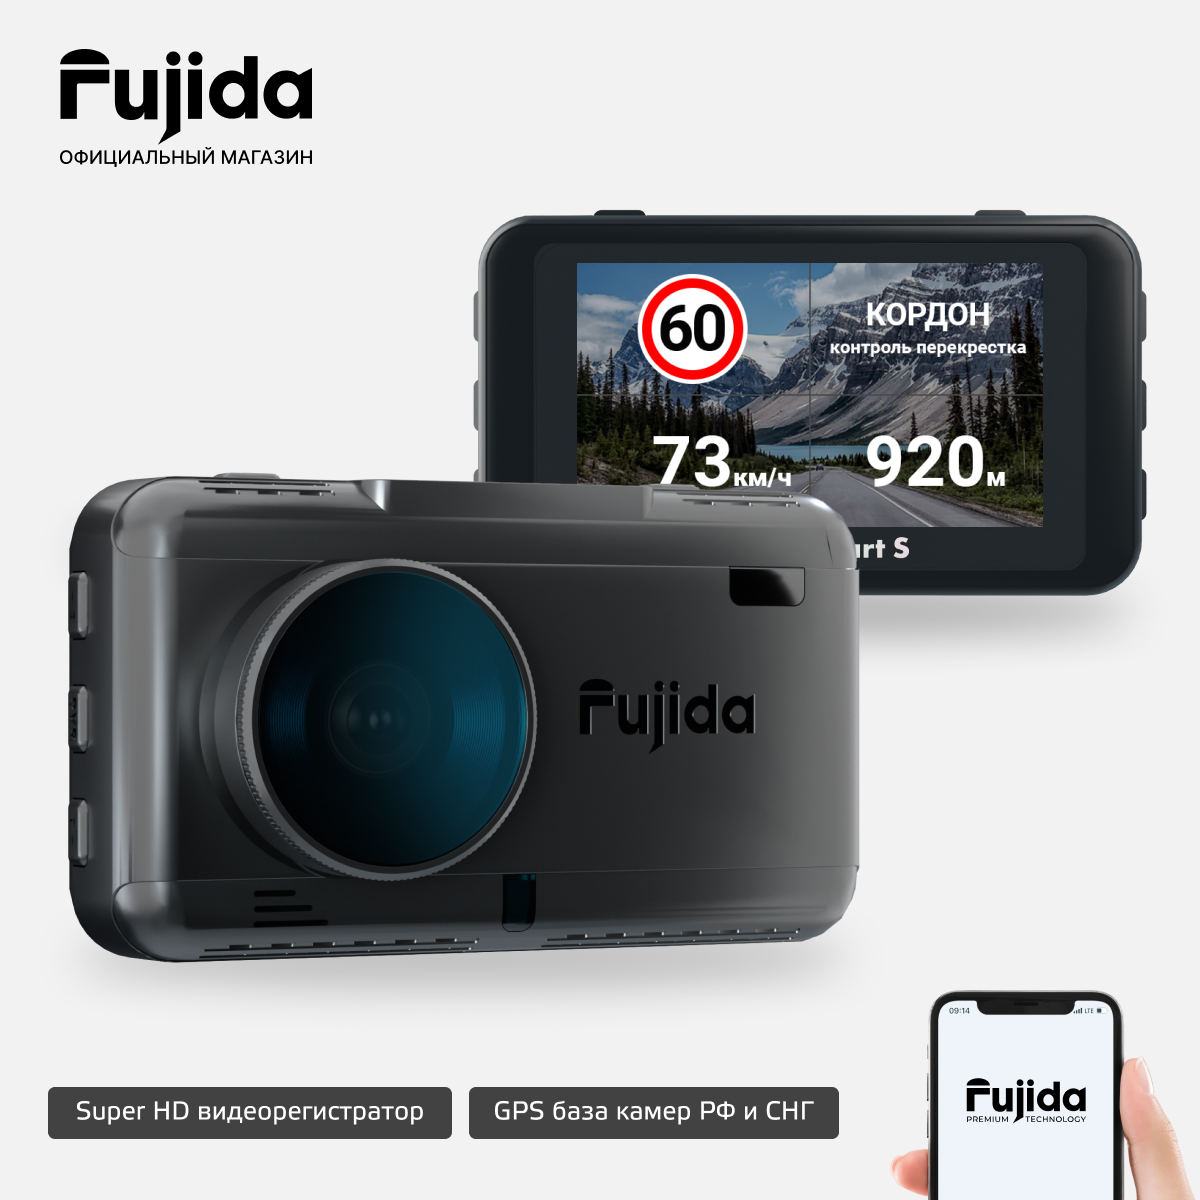 Купить видеорегистратор Fujida Zoom Smart S с GPS информатором, WiFi и магнитным креплением, цены на Мегамаркет | Артикул: 600004188433